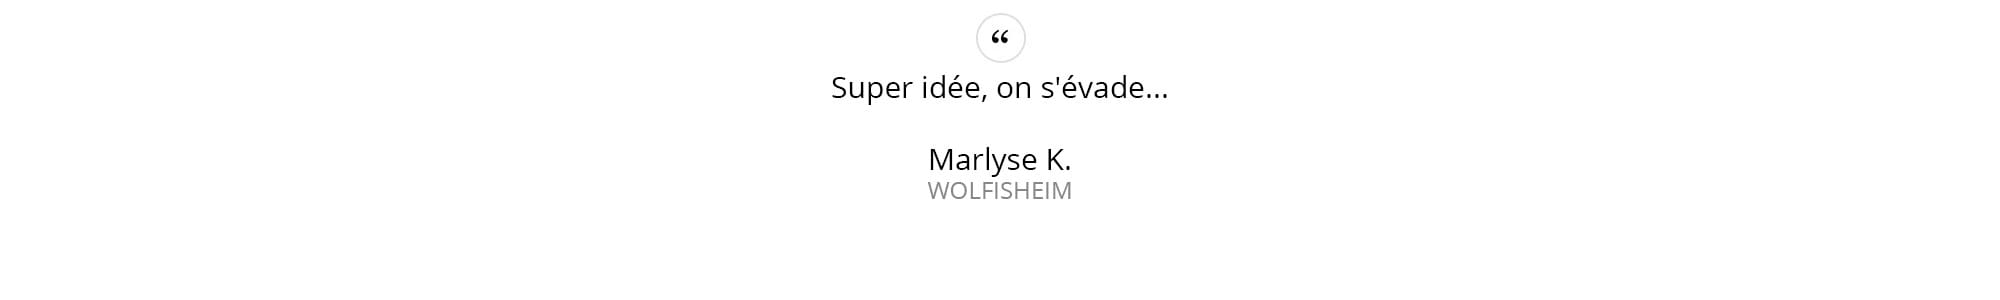 Marlyse-K.---WOLFISHEIM